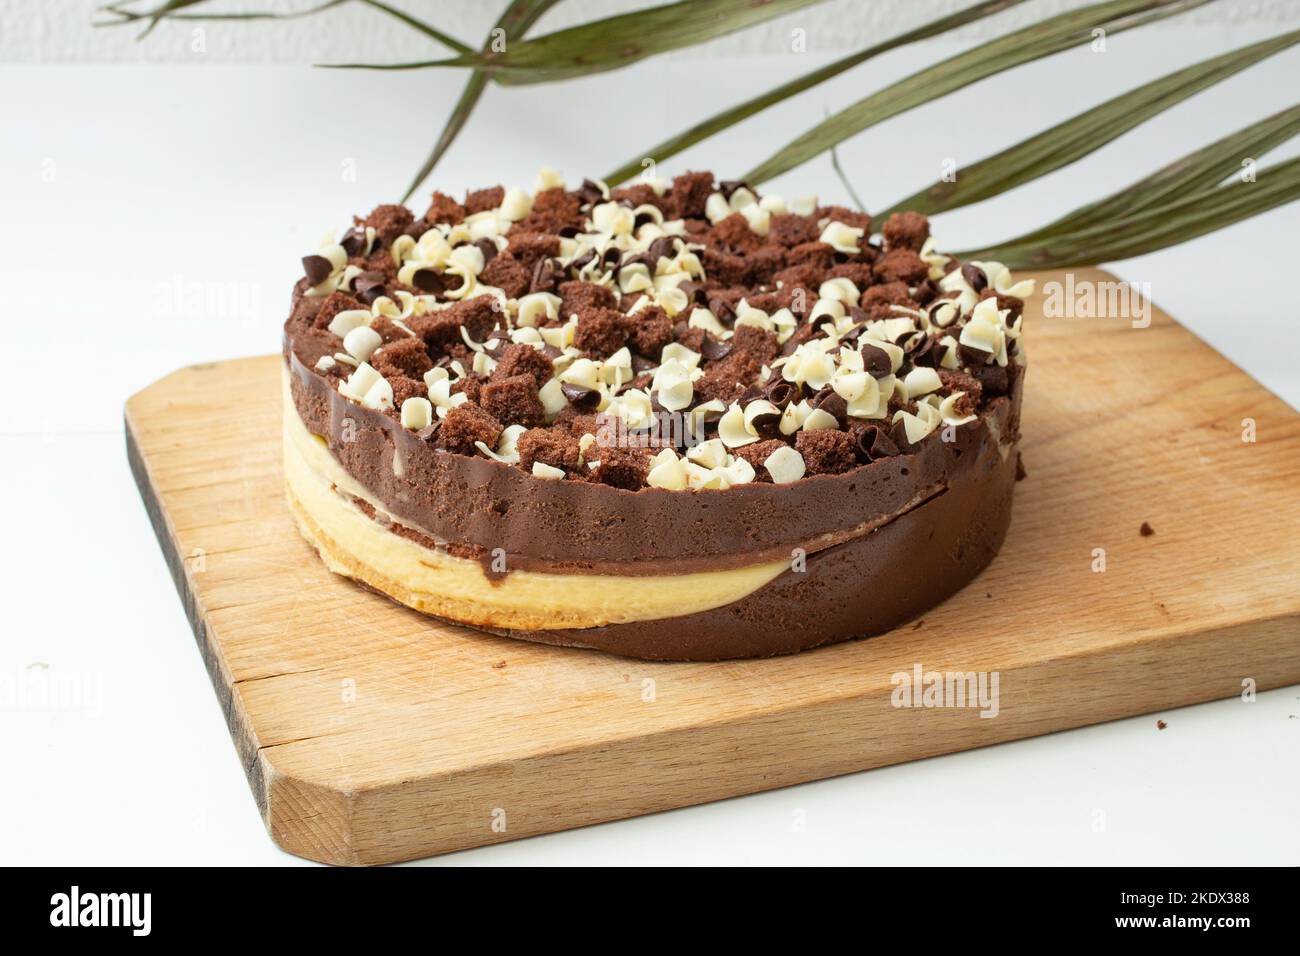 Schokoladen-Vanillekuchen auf einem Holzbrett, mit tropischen grünen Blättern im Hintergrund Stockfoto